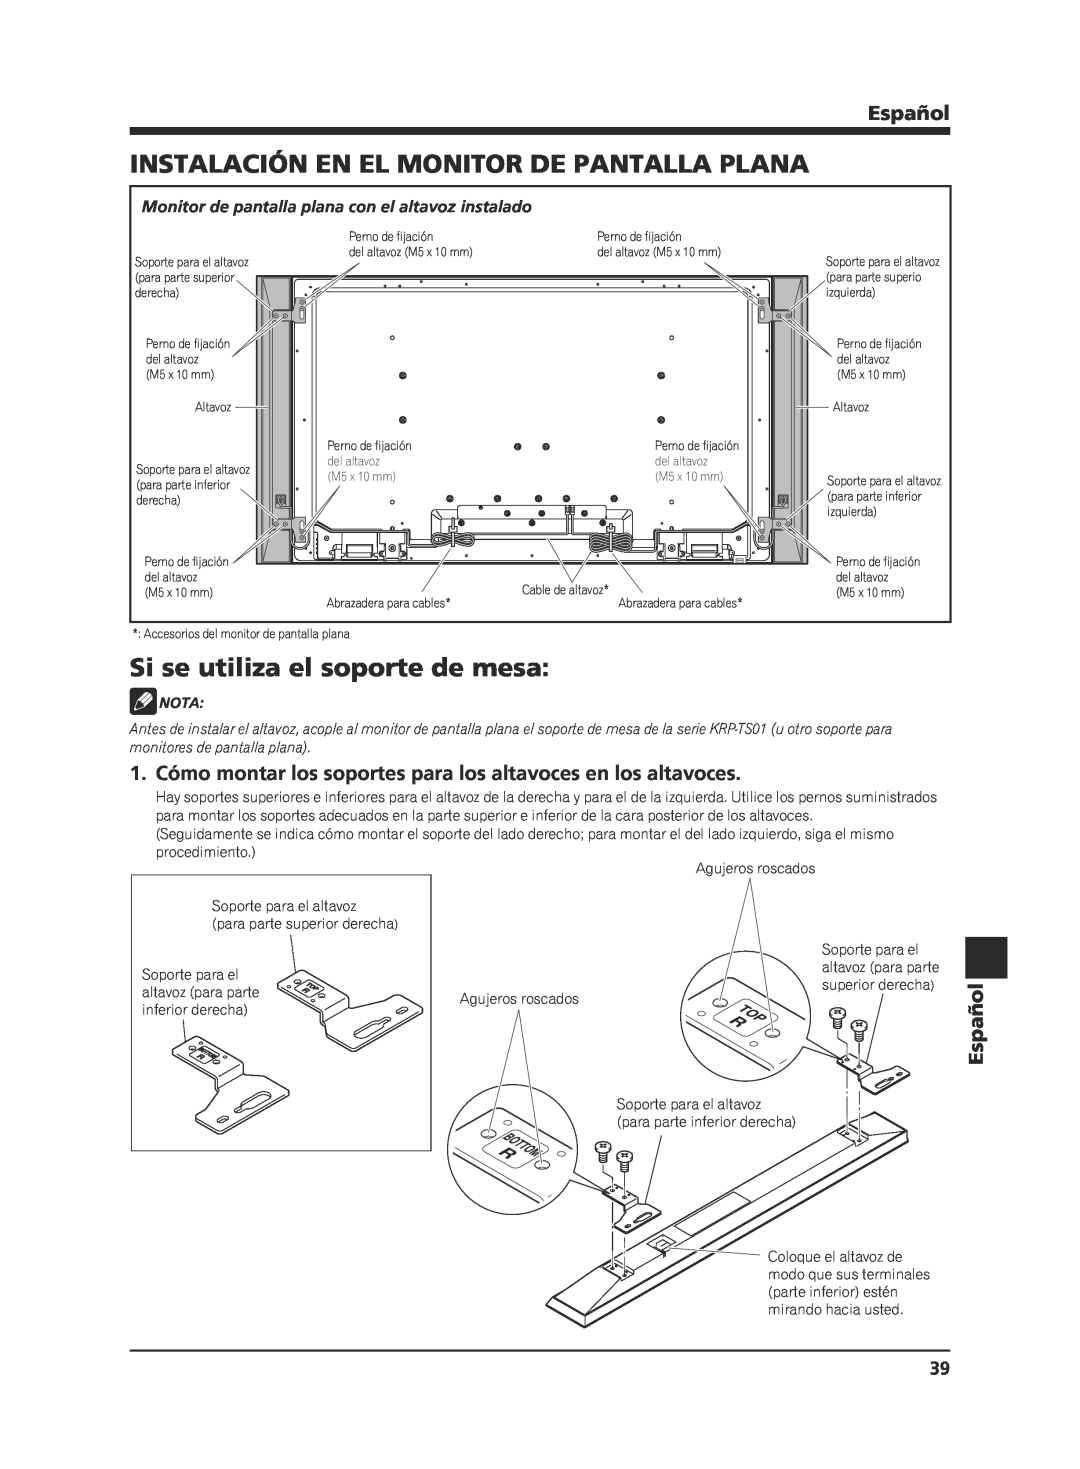 Pioneer KRP-S02 manual Instalación En El Monitor De Pantalla Plana, Si se utiliza el soporte de mesa, Español, Nota 